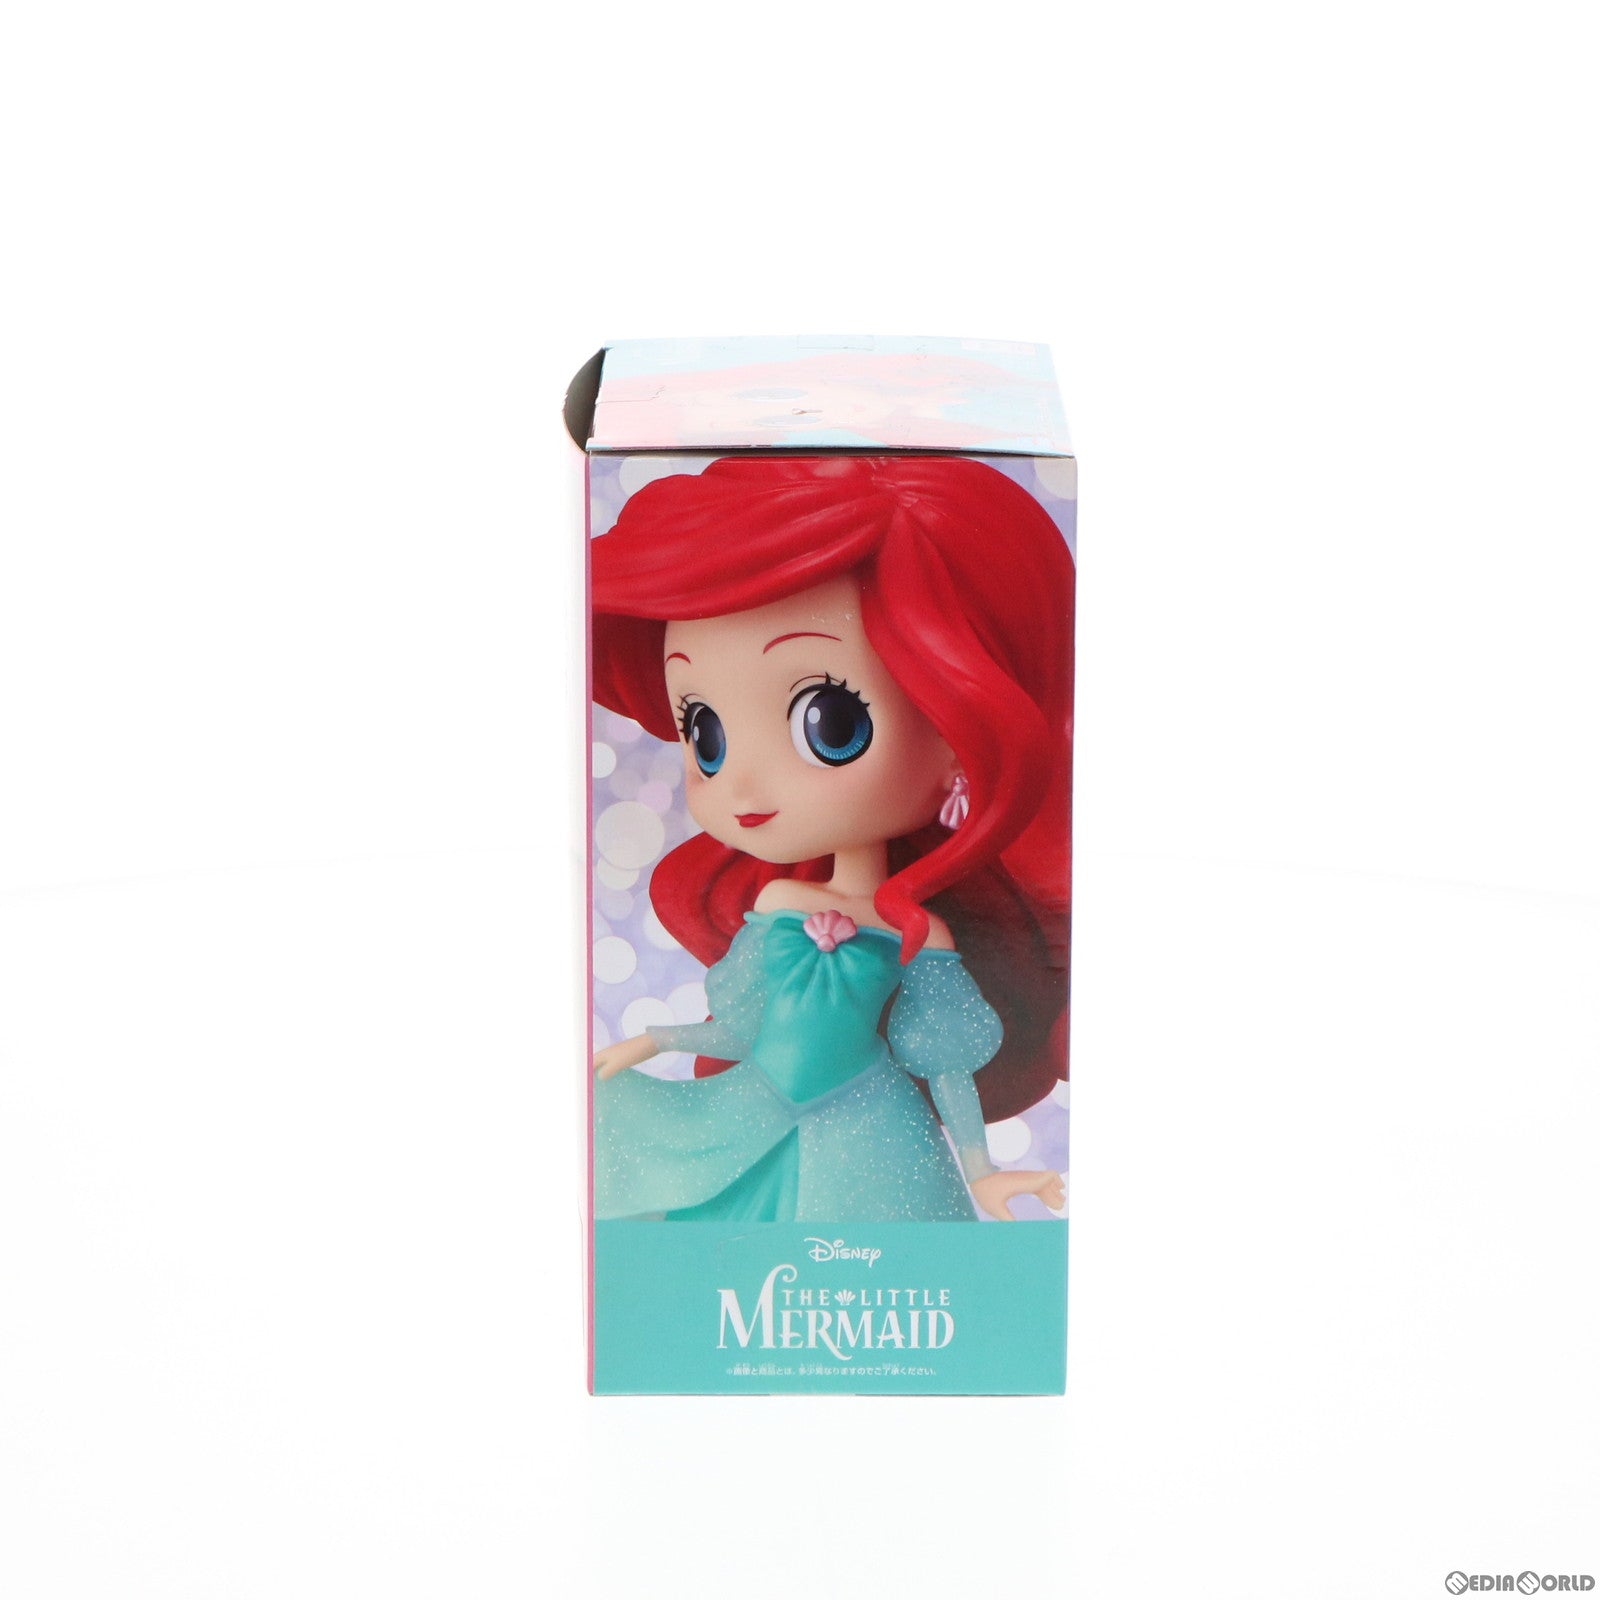 【中古即納】[FIG]アリエル Q posket Disney Characters -Ariel Princess Dress- Glitter line リトル・マーメイド フィギュア プライズ(2599880) バンプレスト(20220217)